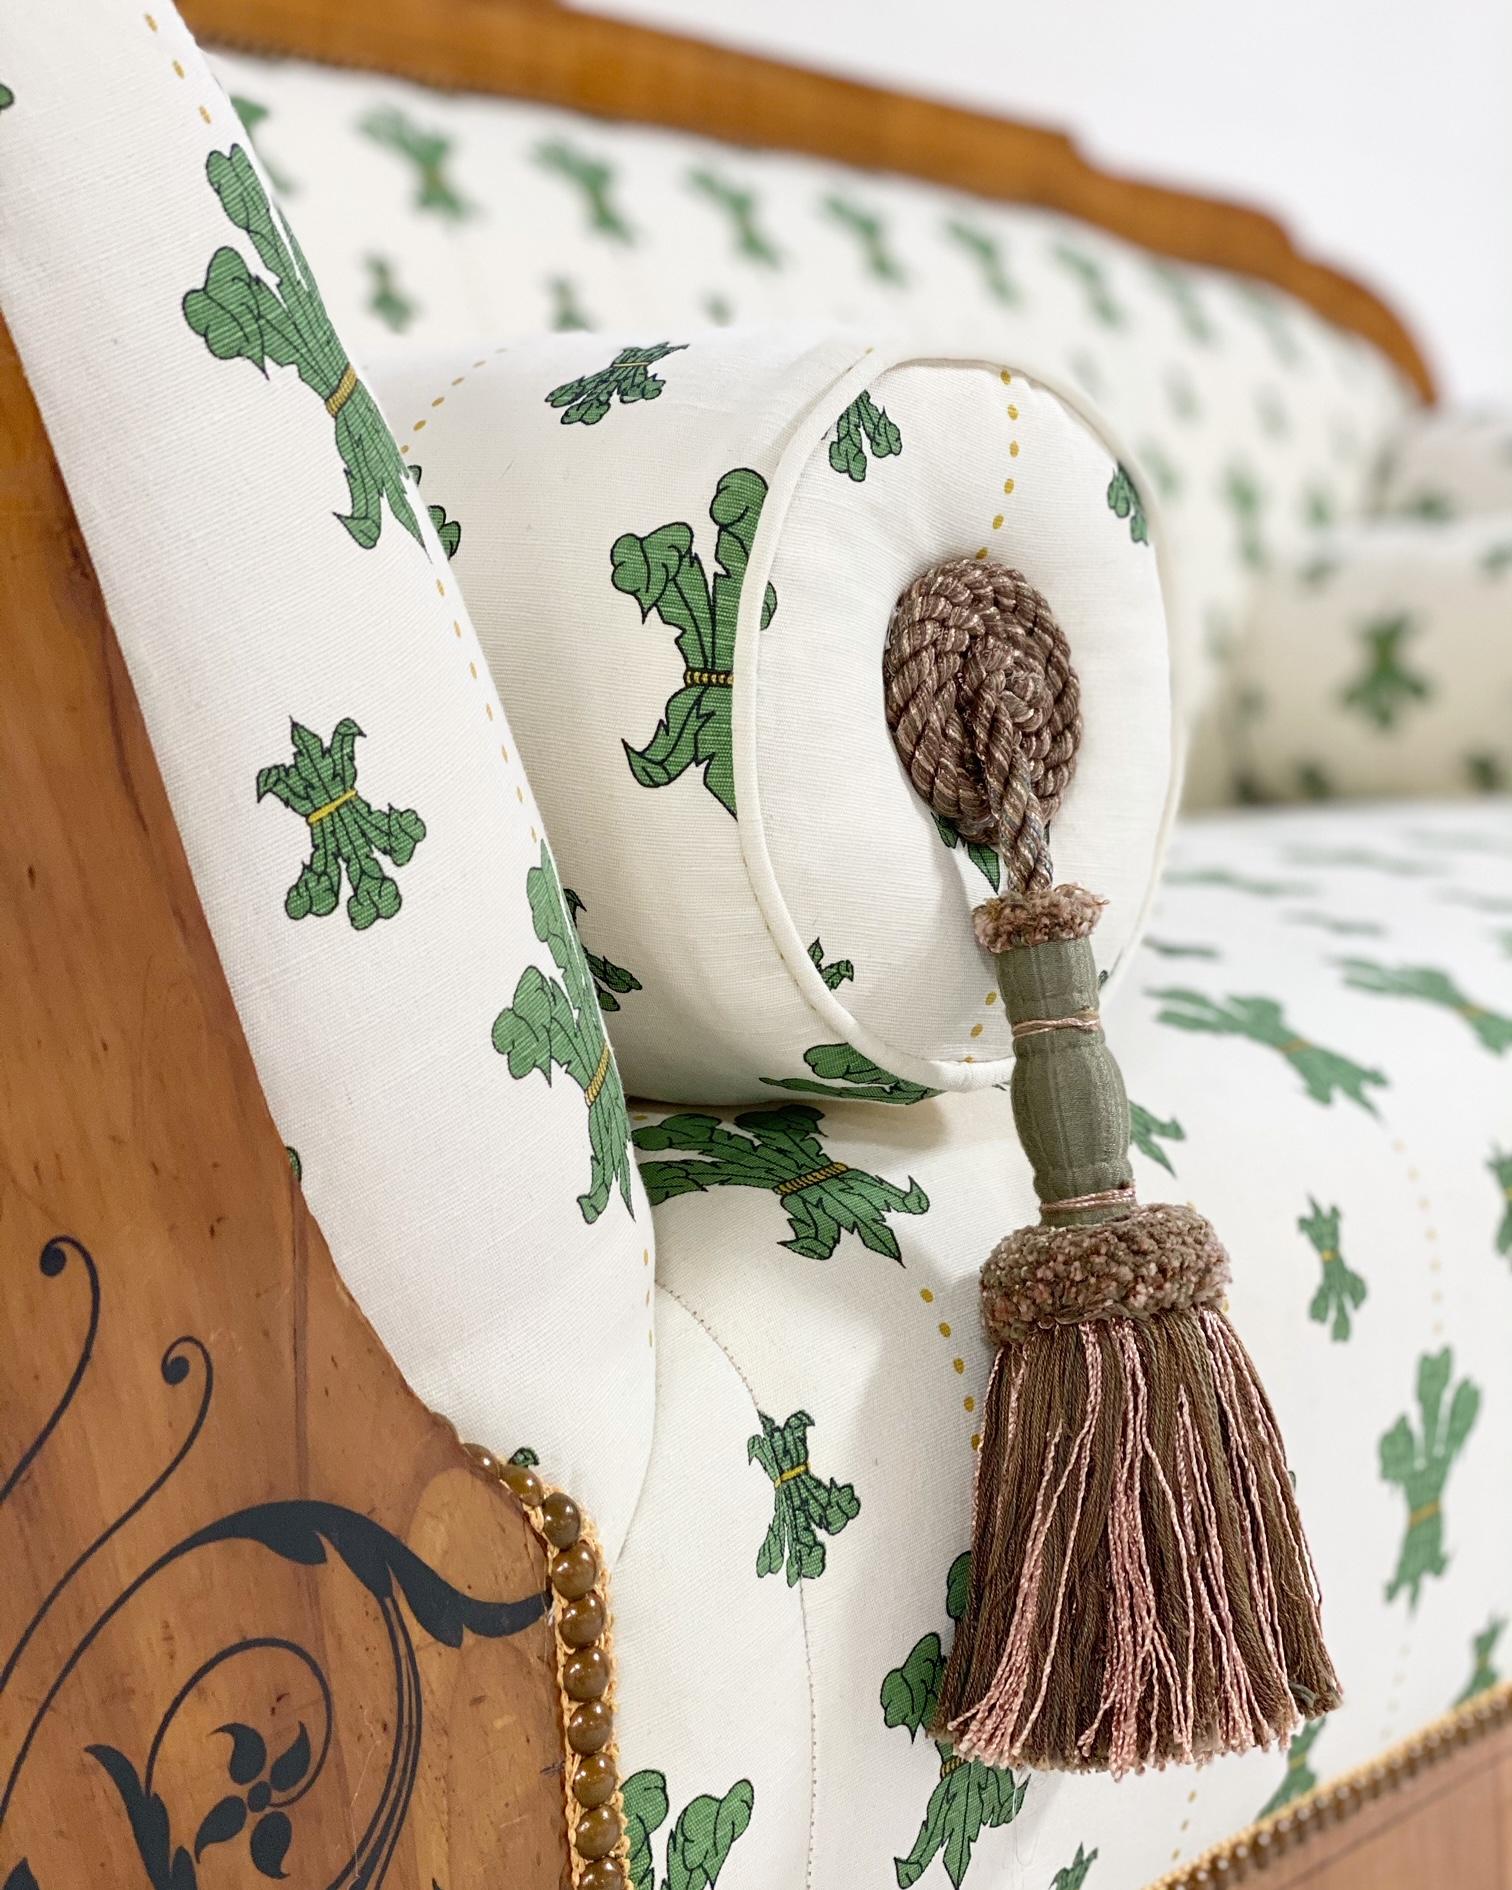 Nachdem wir dieses schöne Biedermeier-Sofa erworben hatten, wussten wir, dass wir etwas Besonderes für die Stoffrestaurierung wollten. Also haben wir uns an die Linie unserer Lieblingsdesignerin Beata Heuman gewandt. Ihre florentinischen Blumen